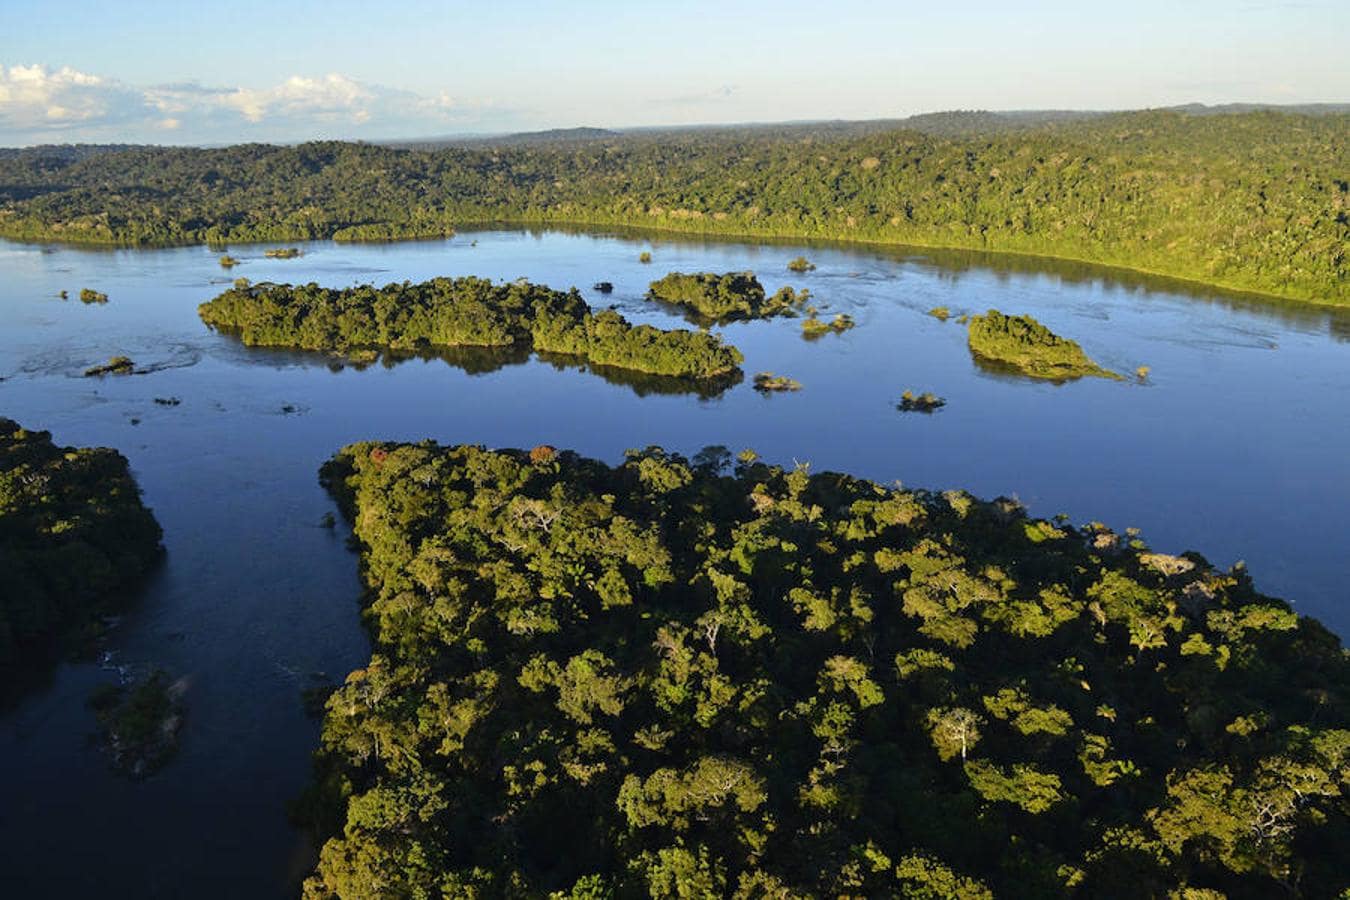 Los pueblos indígenas amazónicos son fundamentales para el Acuerdo de París. Aunque los territorios indígenas representan alrededor del 33% de la Amazonía, solo el 8% de toda la deforestación ha ocurrido dentro de esos territorios; mientras que más de 90% de la deforestación total ha ocurrido en áreas no protegidas por pueblos indígenas, explican desde la organización WWF.